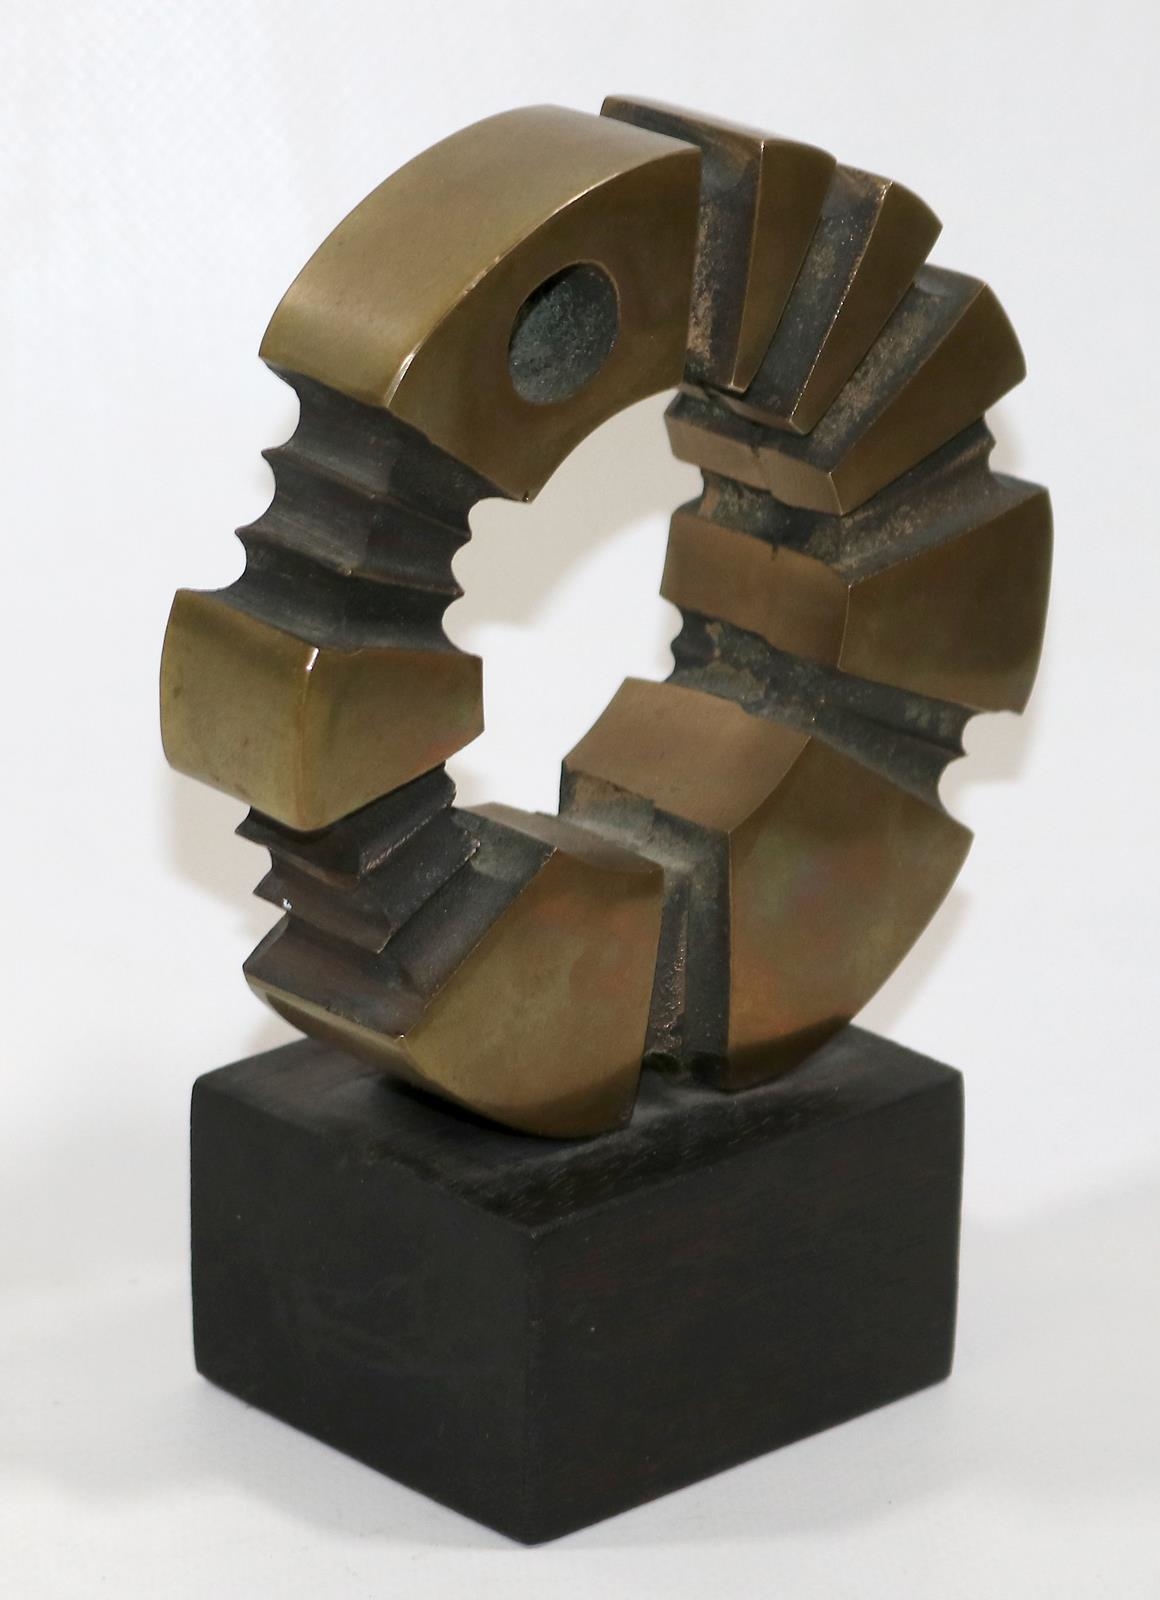 Artwork by André Bucher, Lebensrad (La Roue de la Vie), Made of bronze on wood base